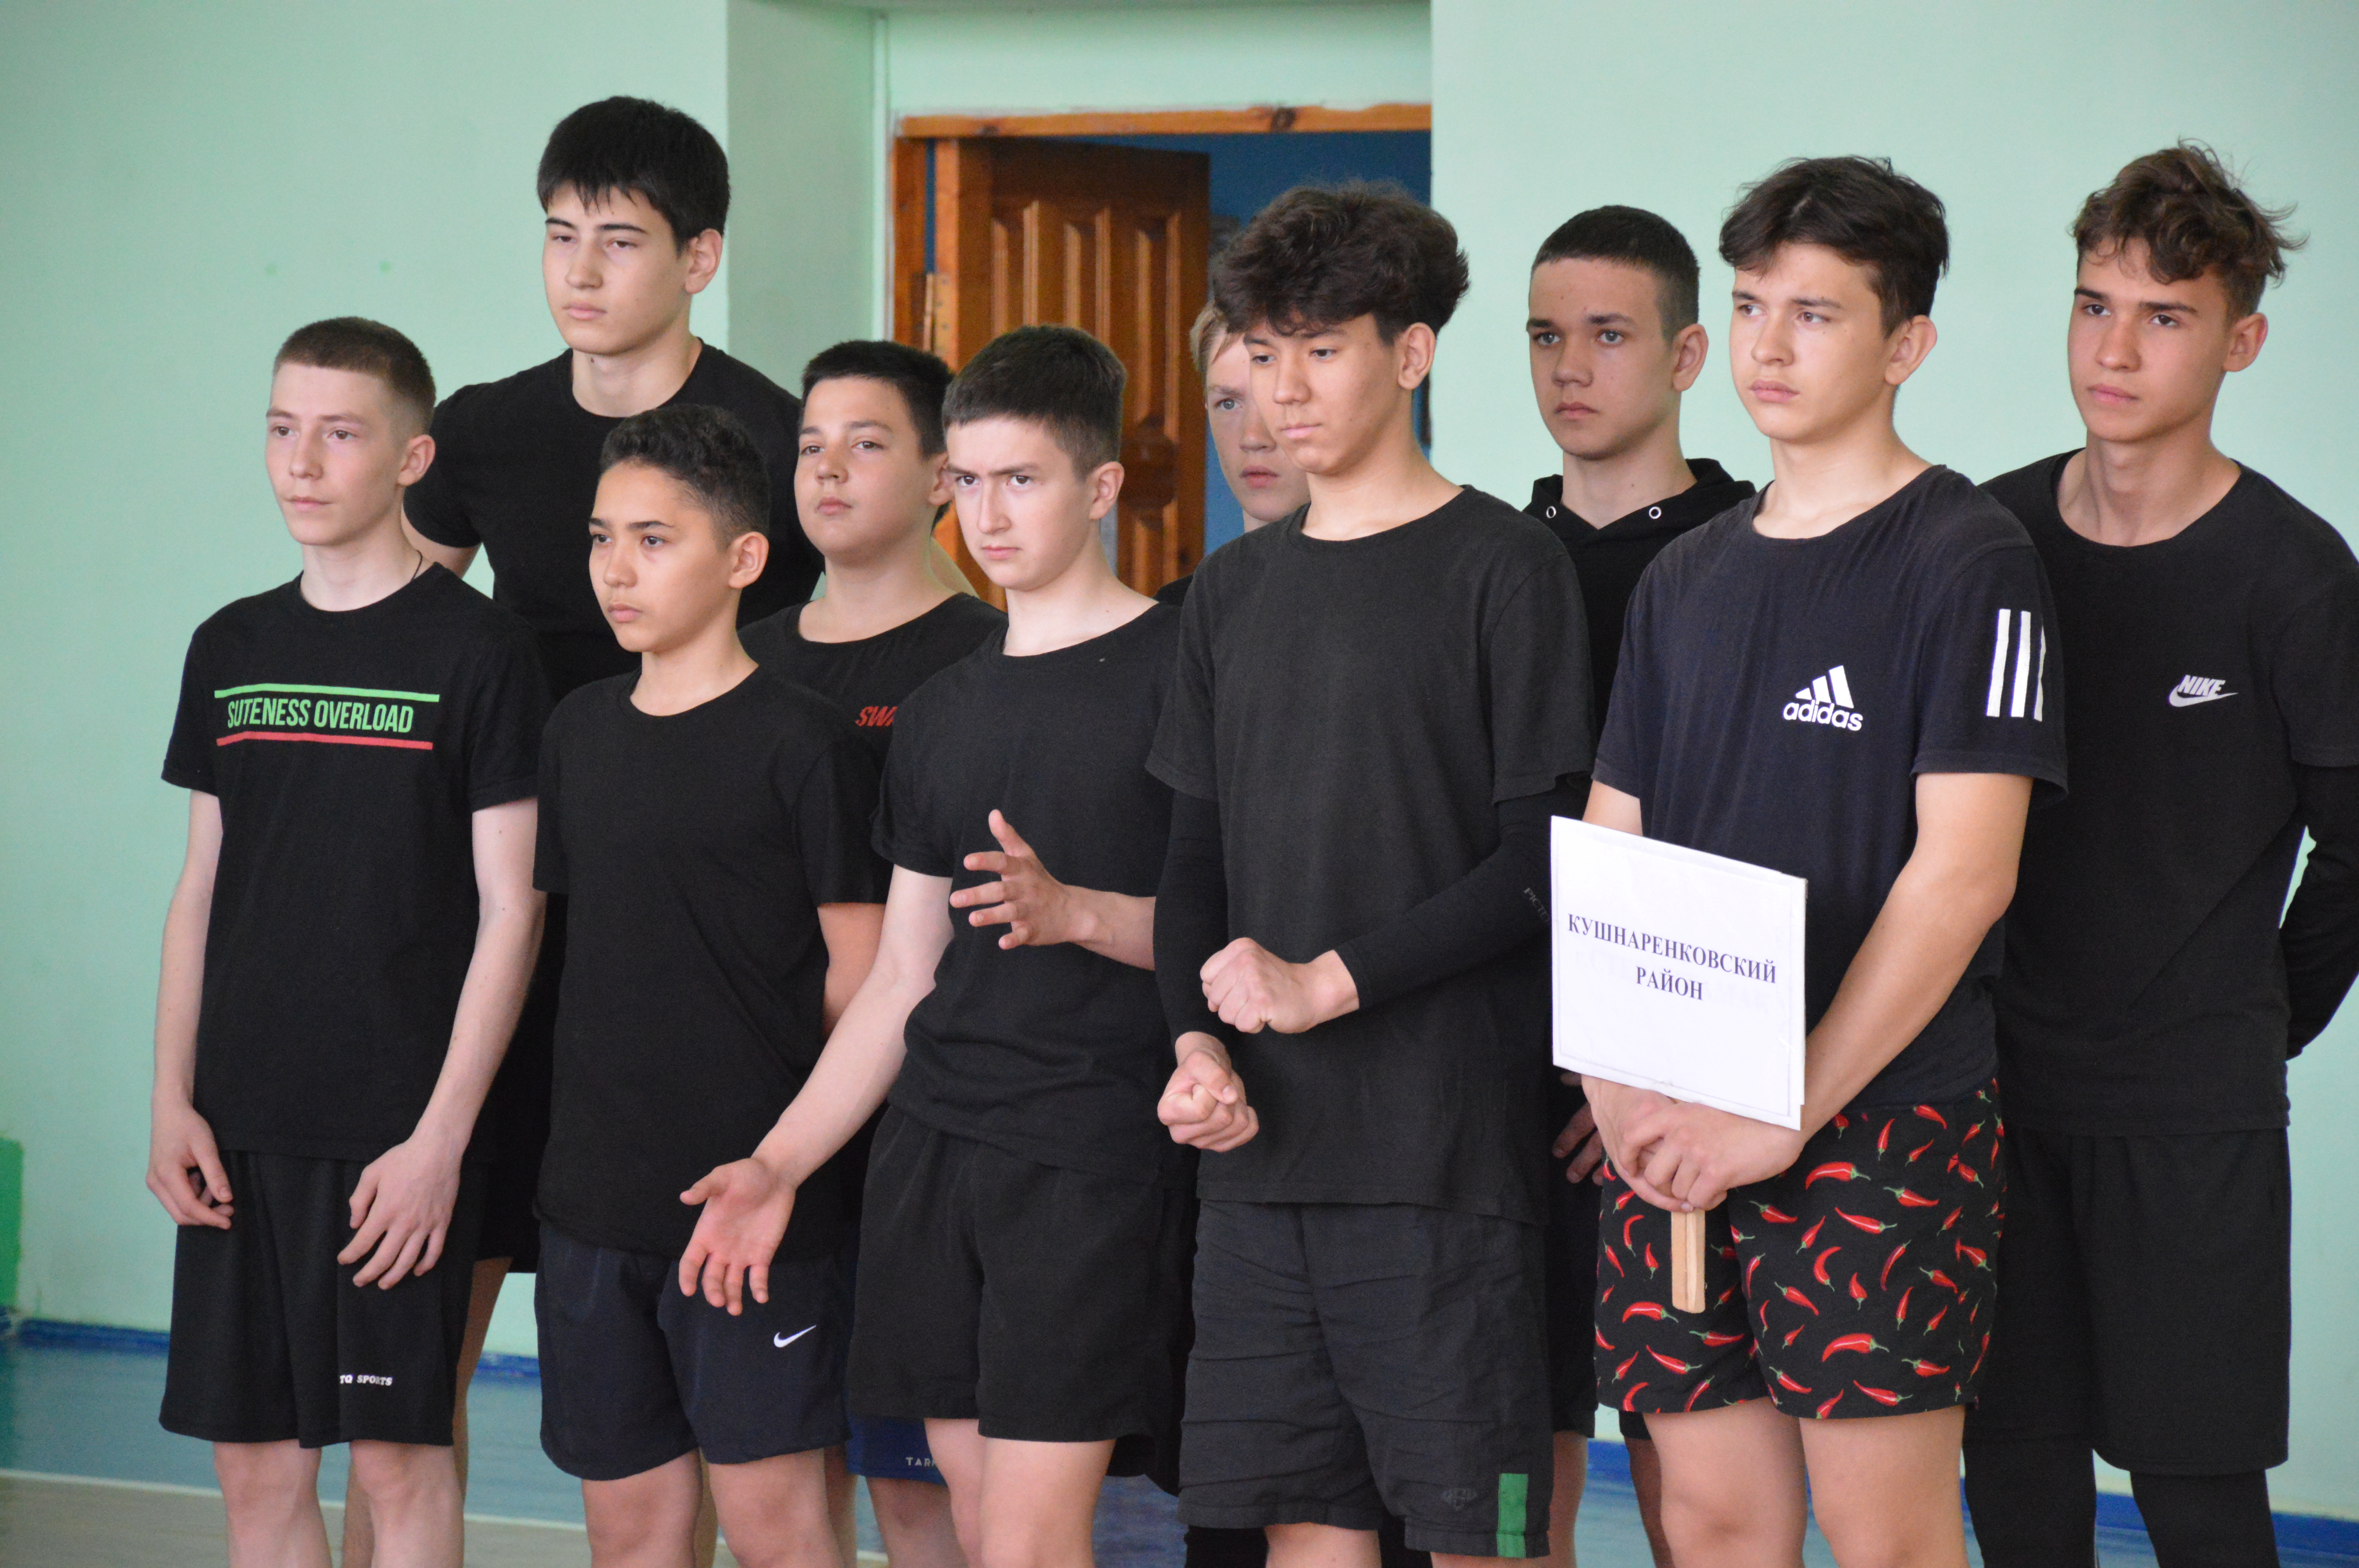 Школьная волейбольная лига в с. Архангельское